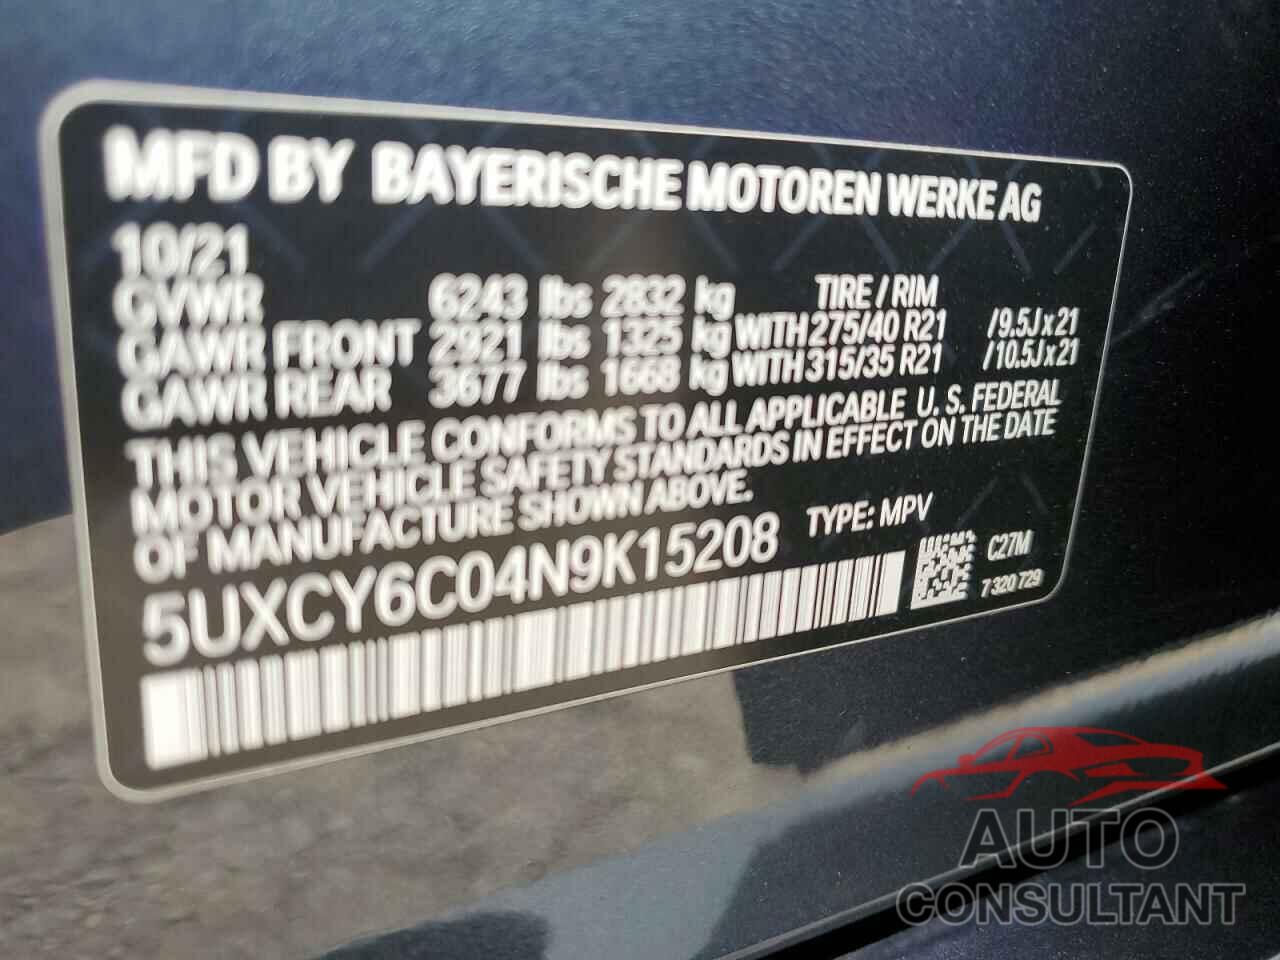 BMW X6 2022 - 5UXCY6C04N9K15208